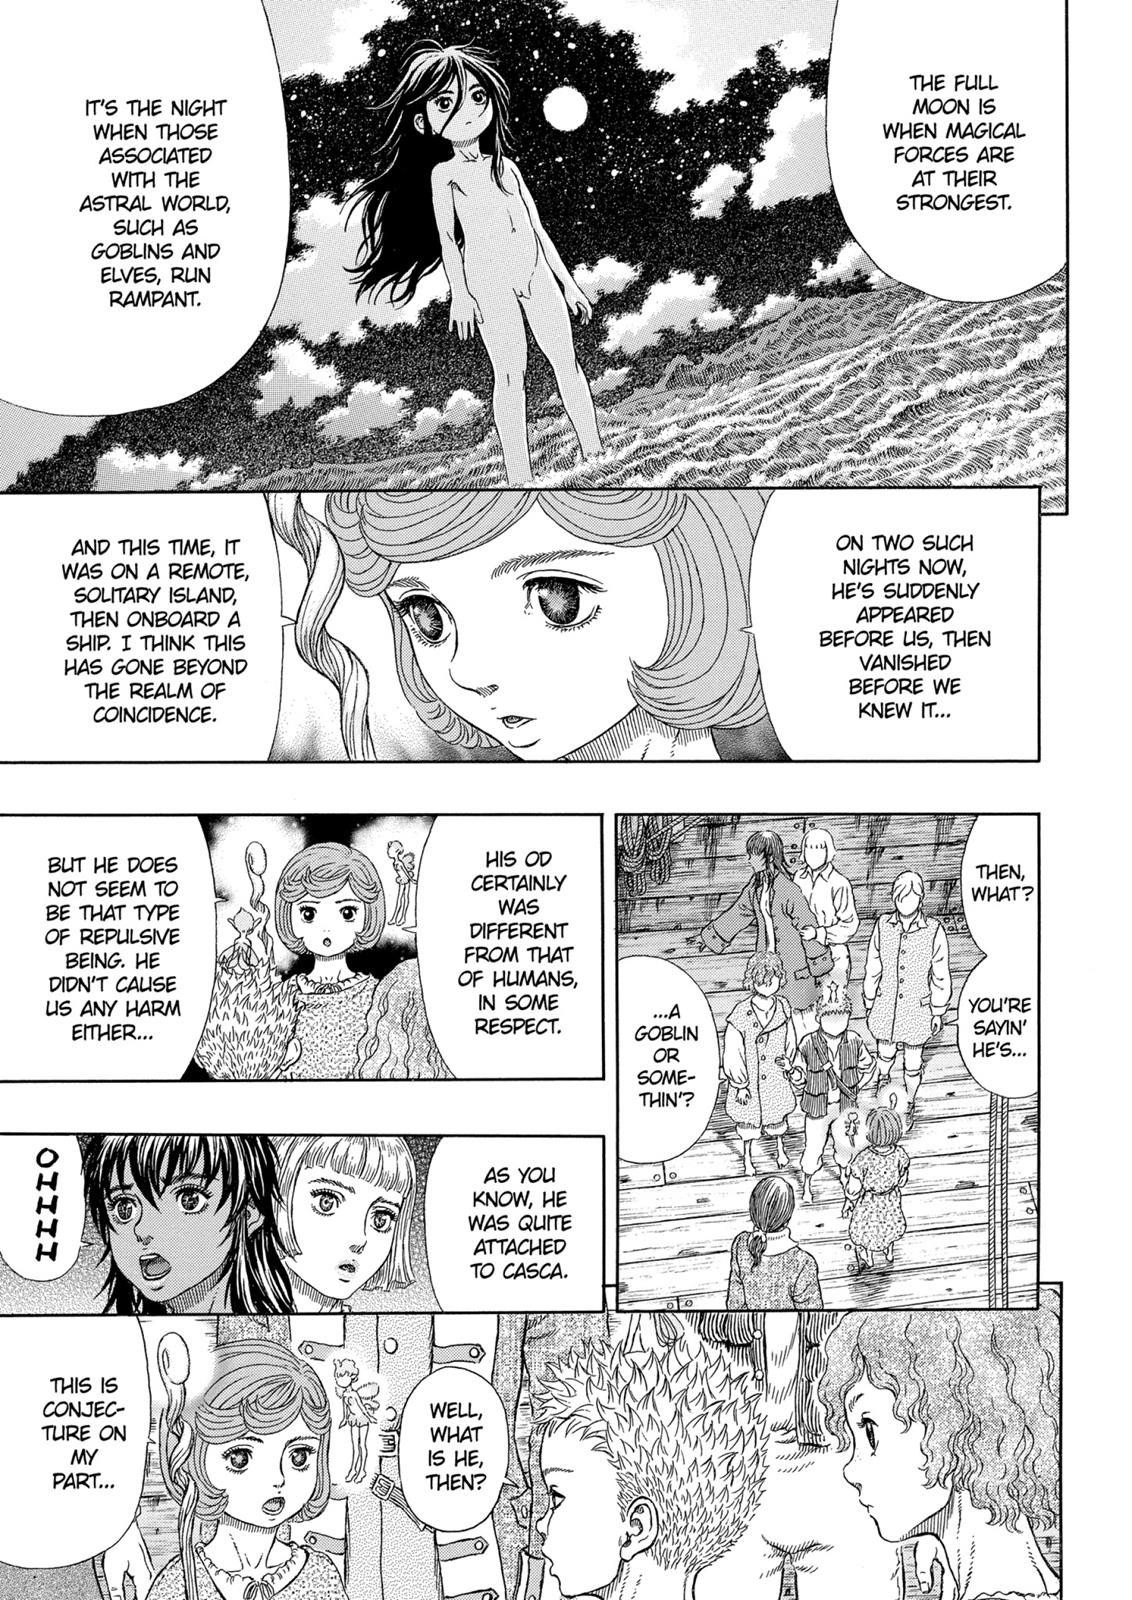 Berserk Manga Chapter 328 image 13